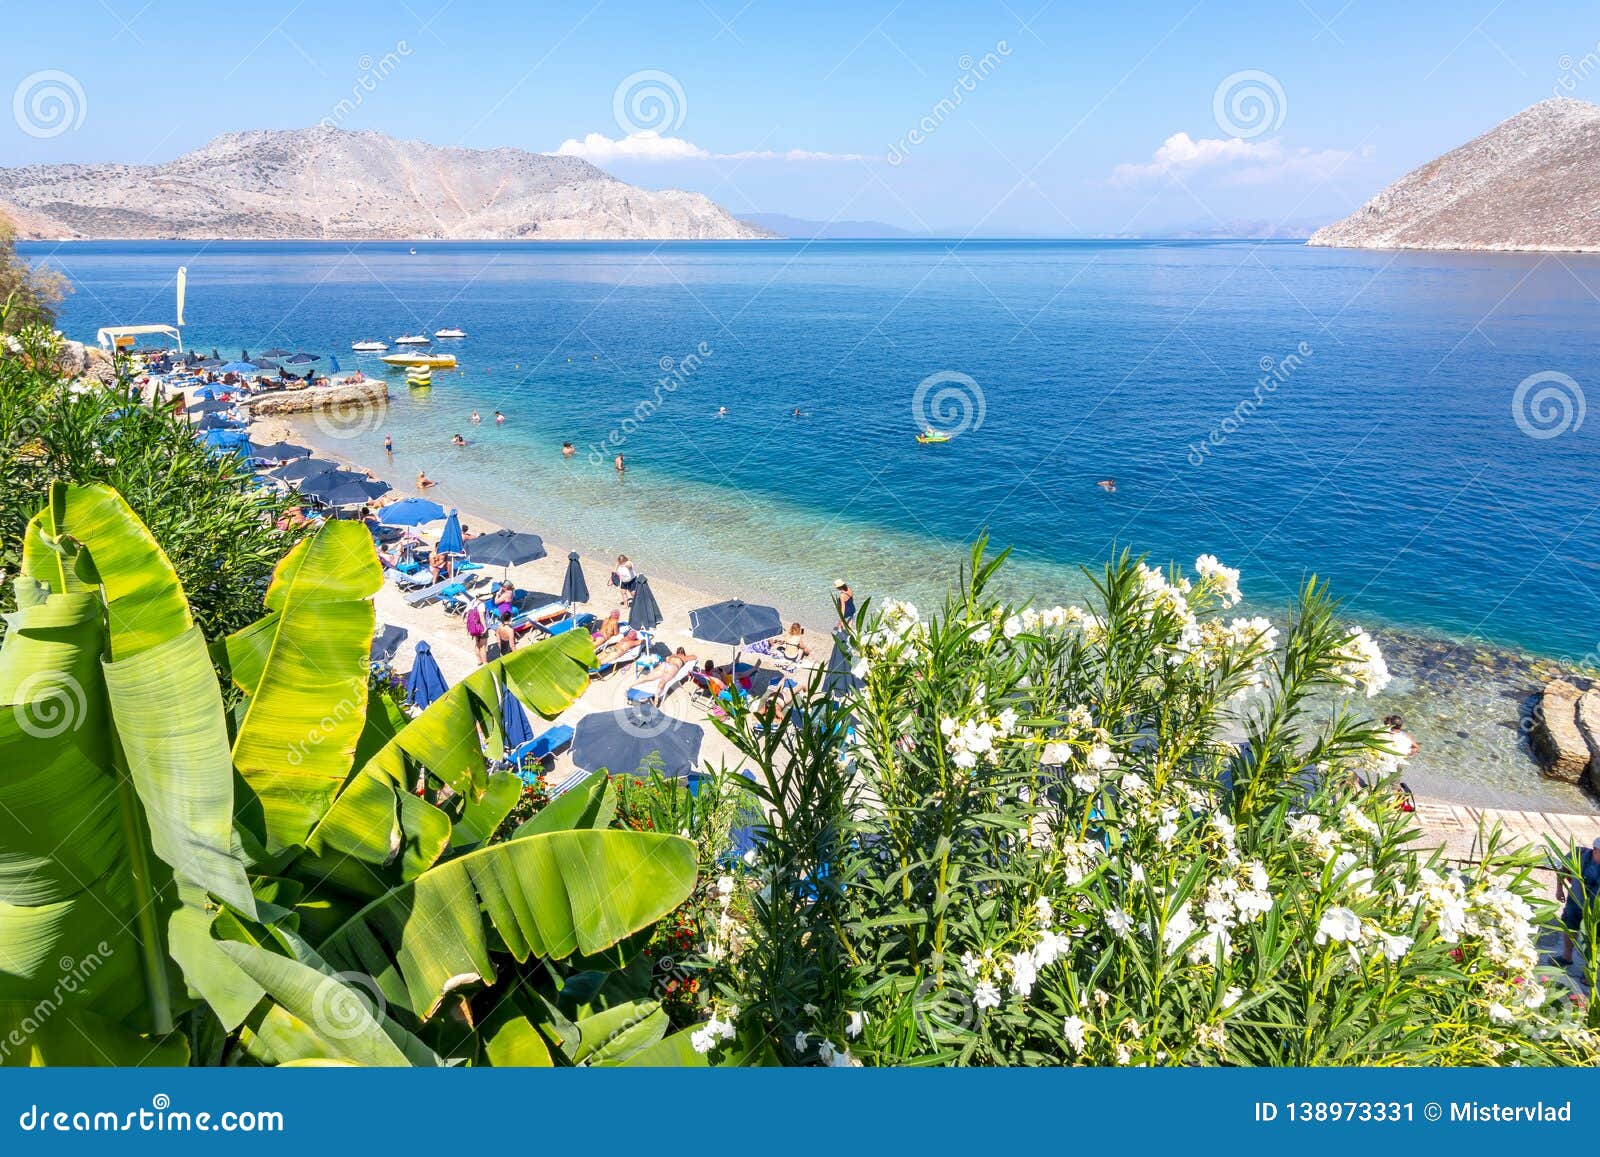 nos beach, symi island, greece